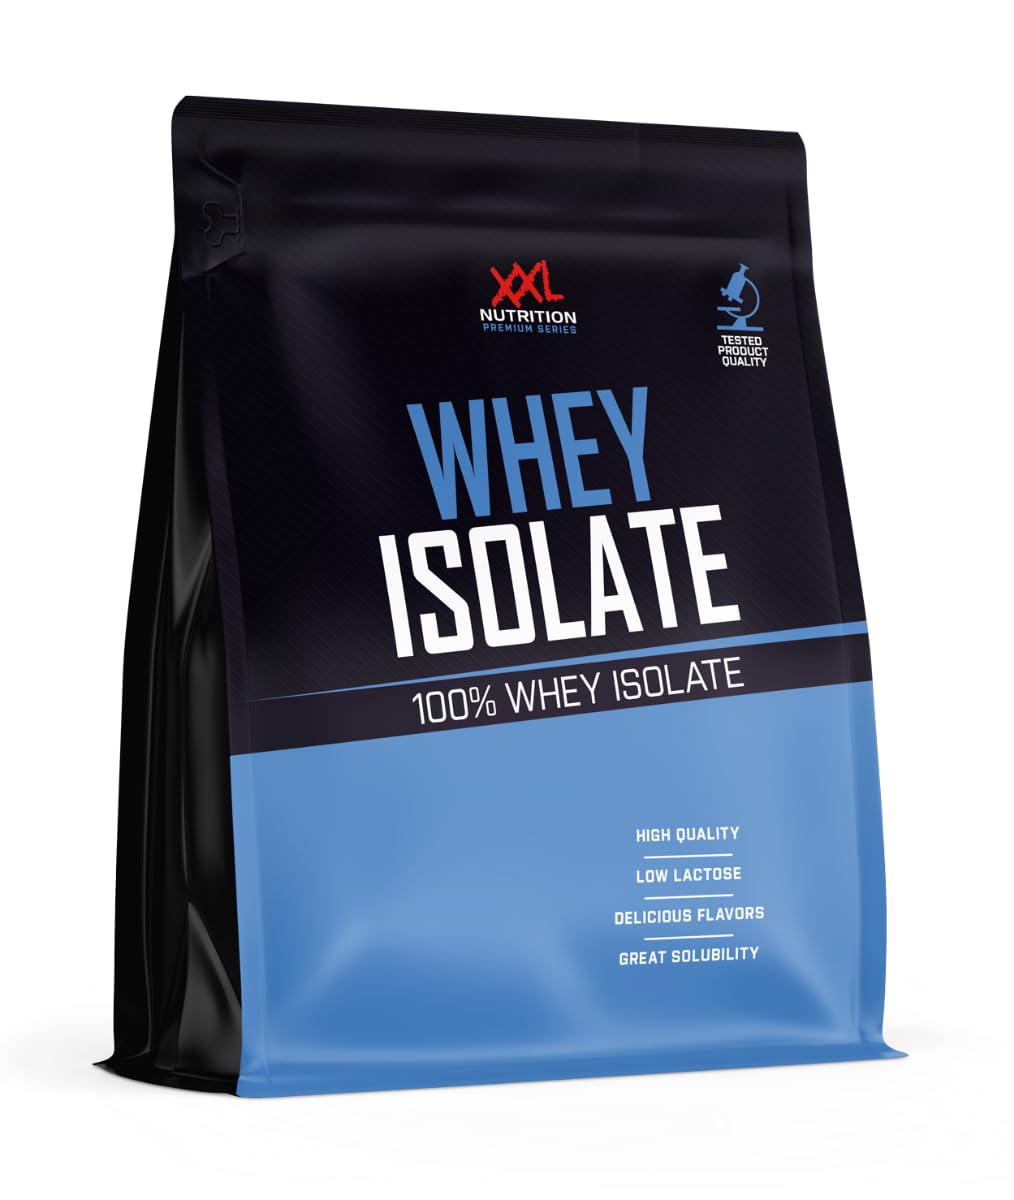 XXL Nutrition - Whey Isolate - Höchste Qualität Molkenprotein-Isolat, nur 0,8% Laktose - Eiweiss Pulver Isolat - 1000 Gramm - Banane